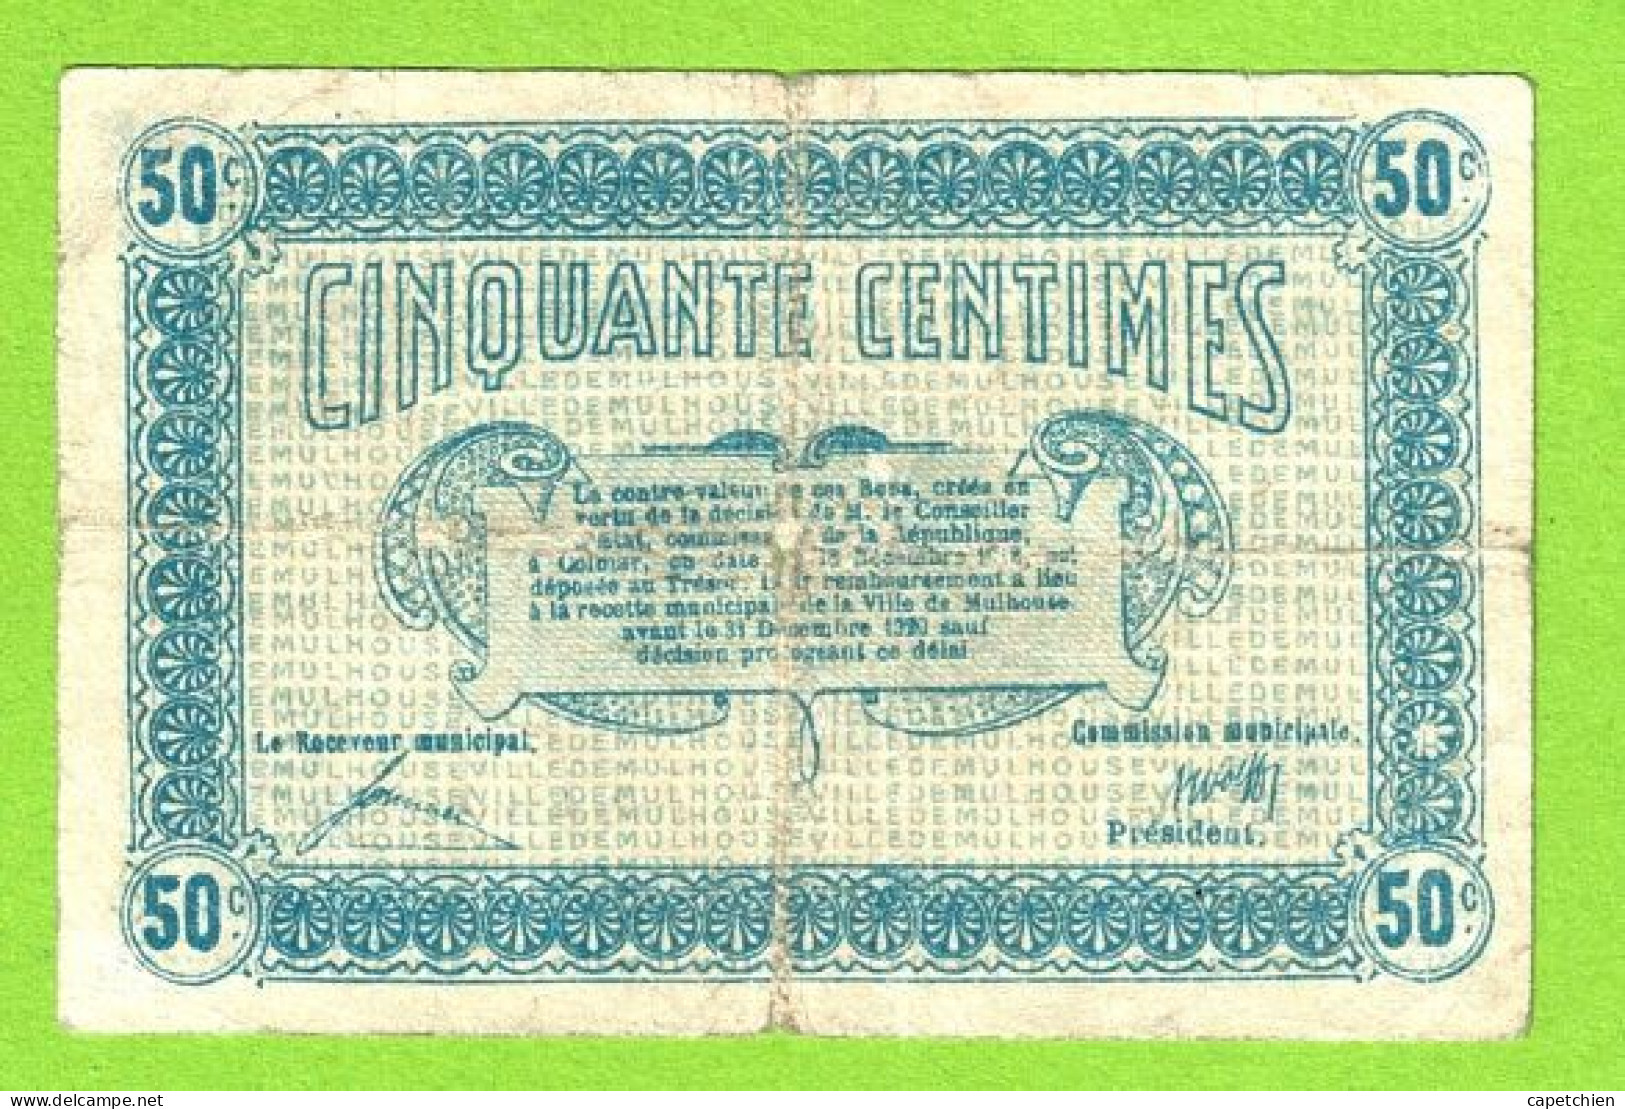 FRANCE / MULHOUSE / 50 CENTIMES / 28 DECEMBRE 1918 / N° 75143 - SERIE B - Handelskammer